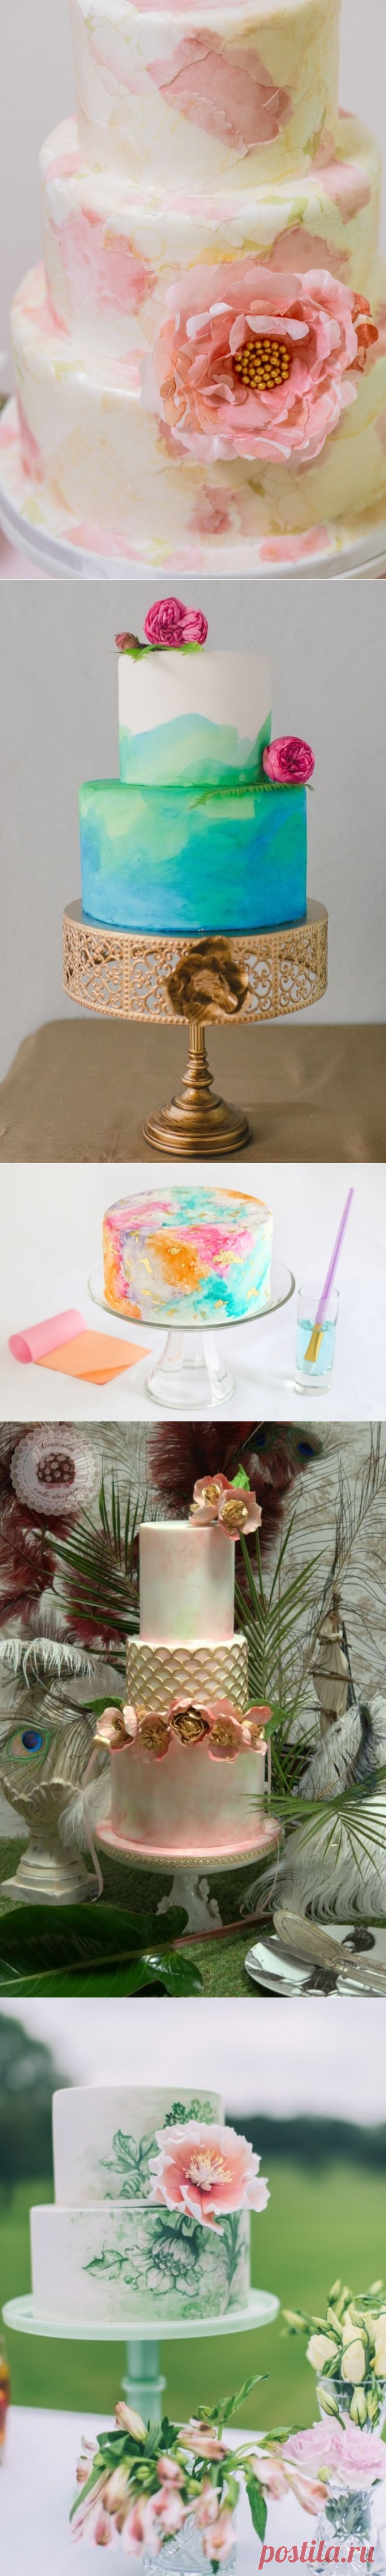 Свадебный торт с акварельной росписью. Рецепты и идеи